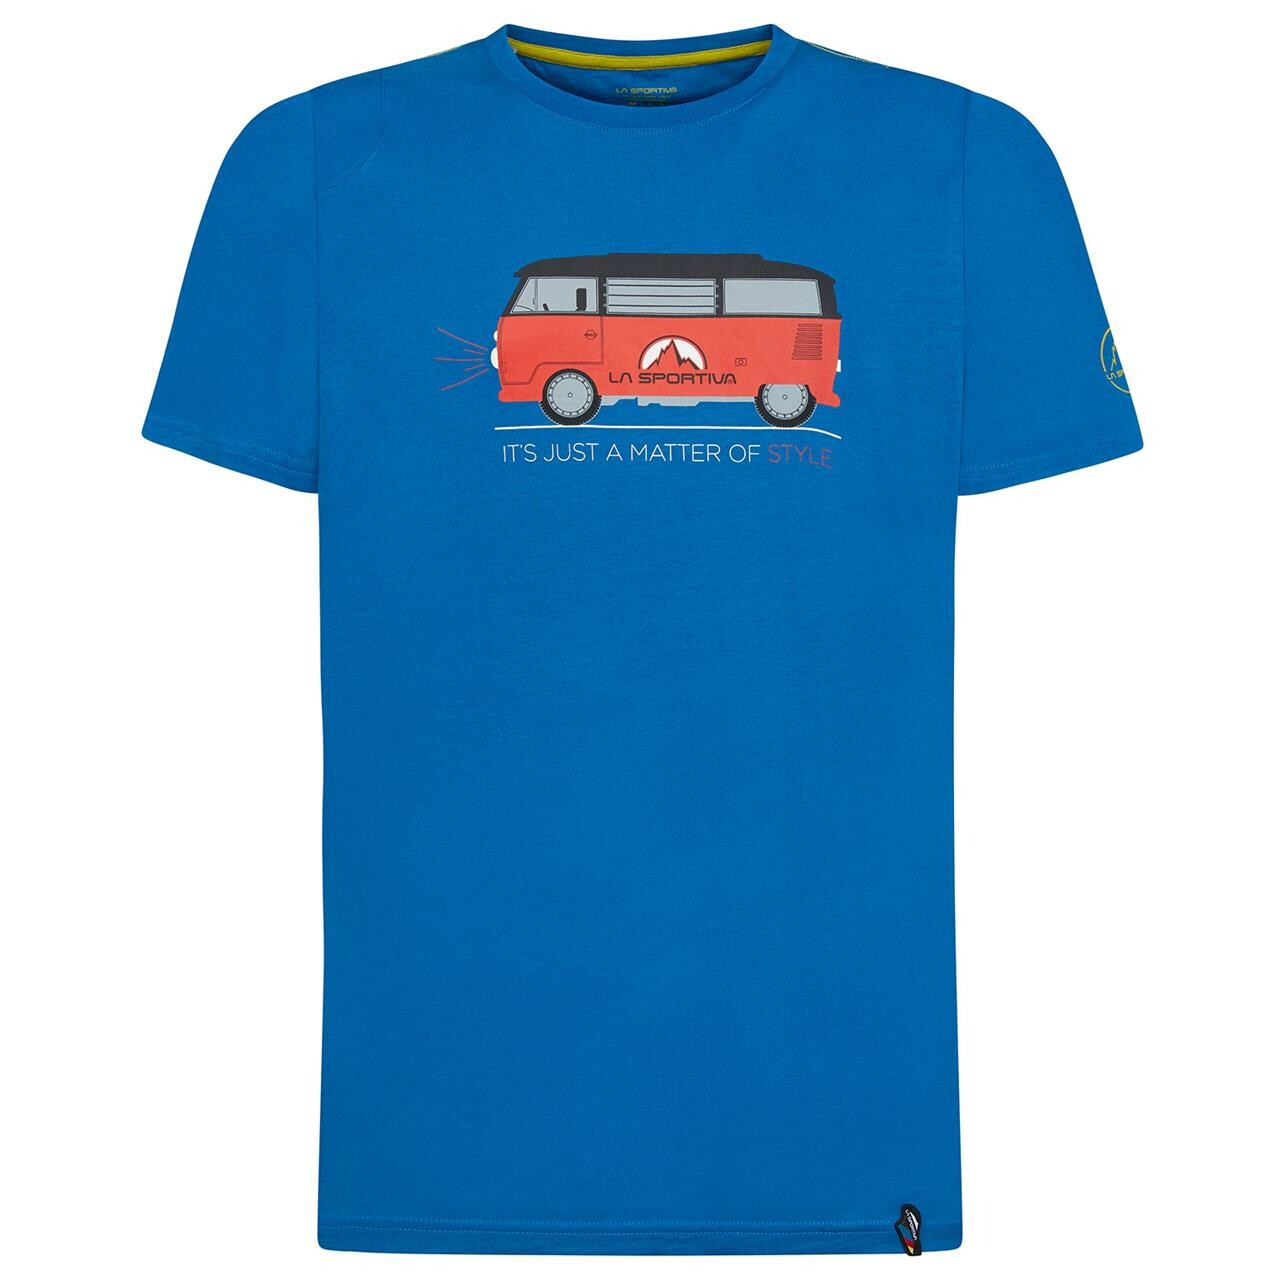 La Sportiva Mens Van T-shirt  (Blå (NEPTUNE) Medium)